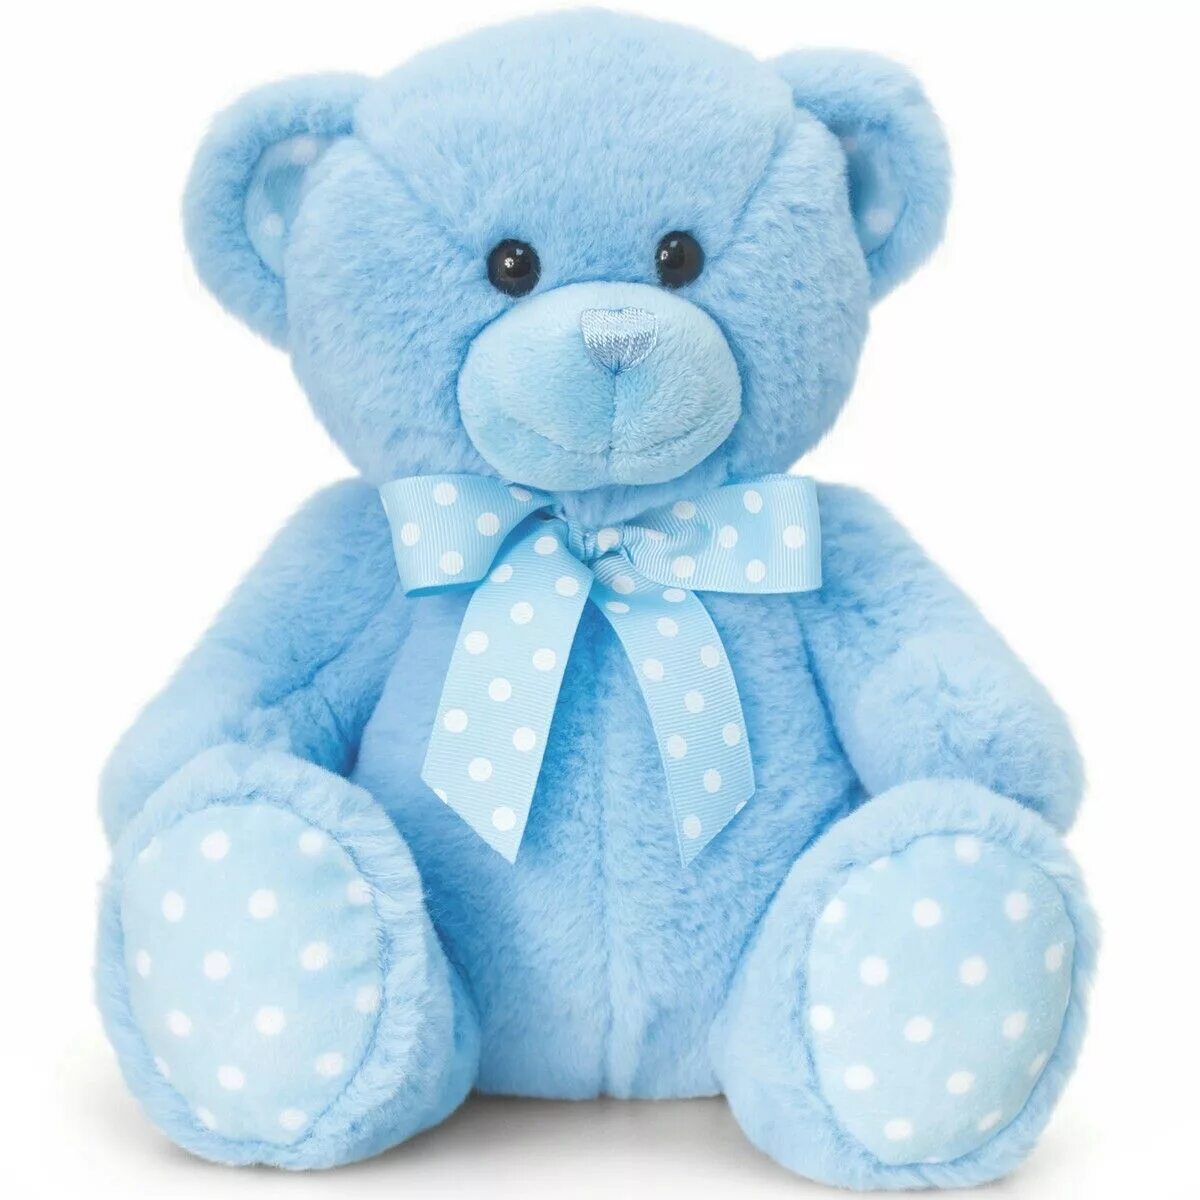 Плюшевый мишка Теди синий. Мишка Тедди с голубым мишкой. Мягкие игрушки. Голубой плюшевый медведь.